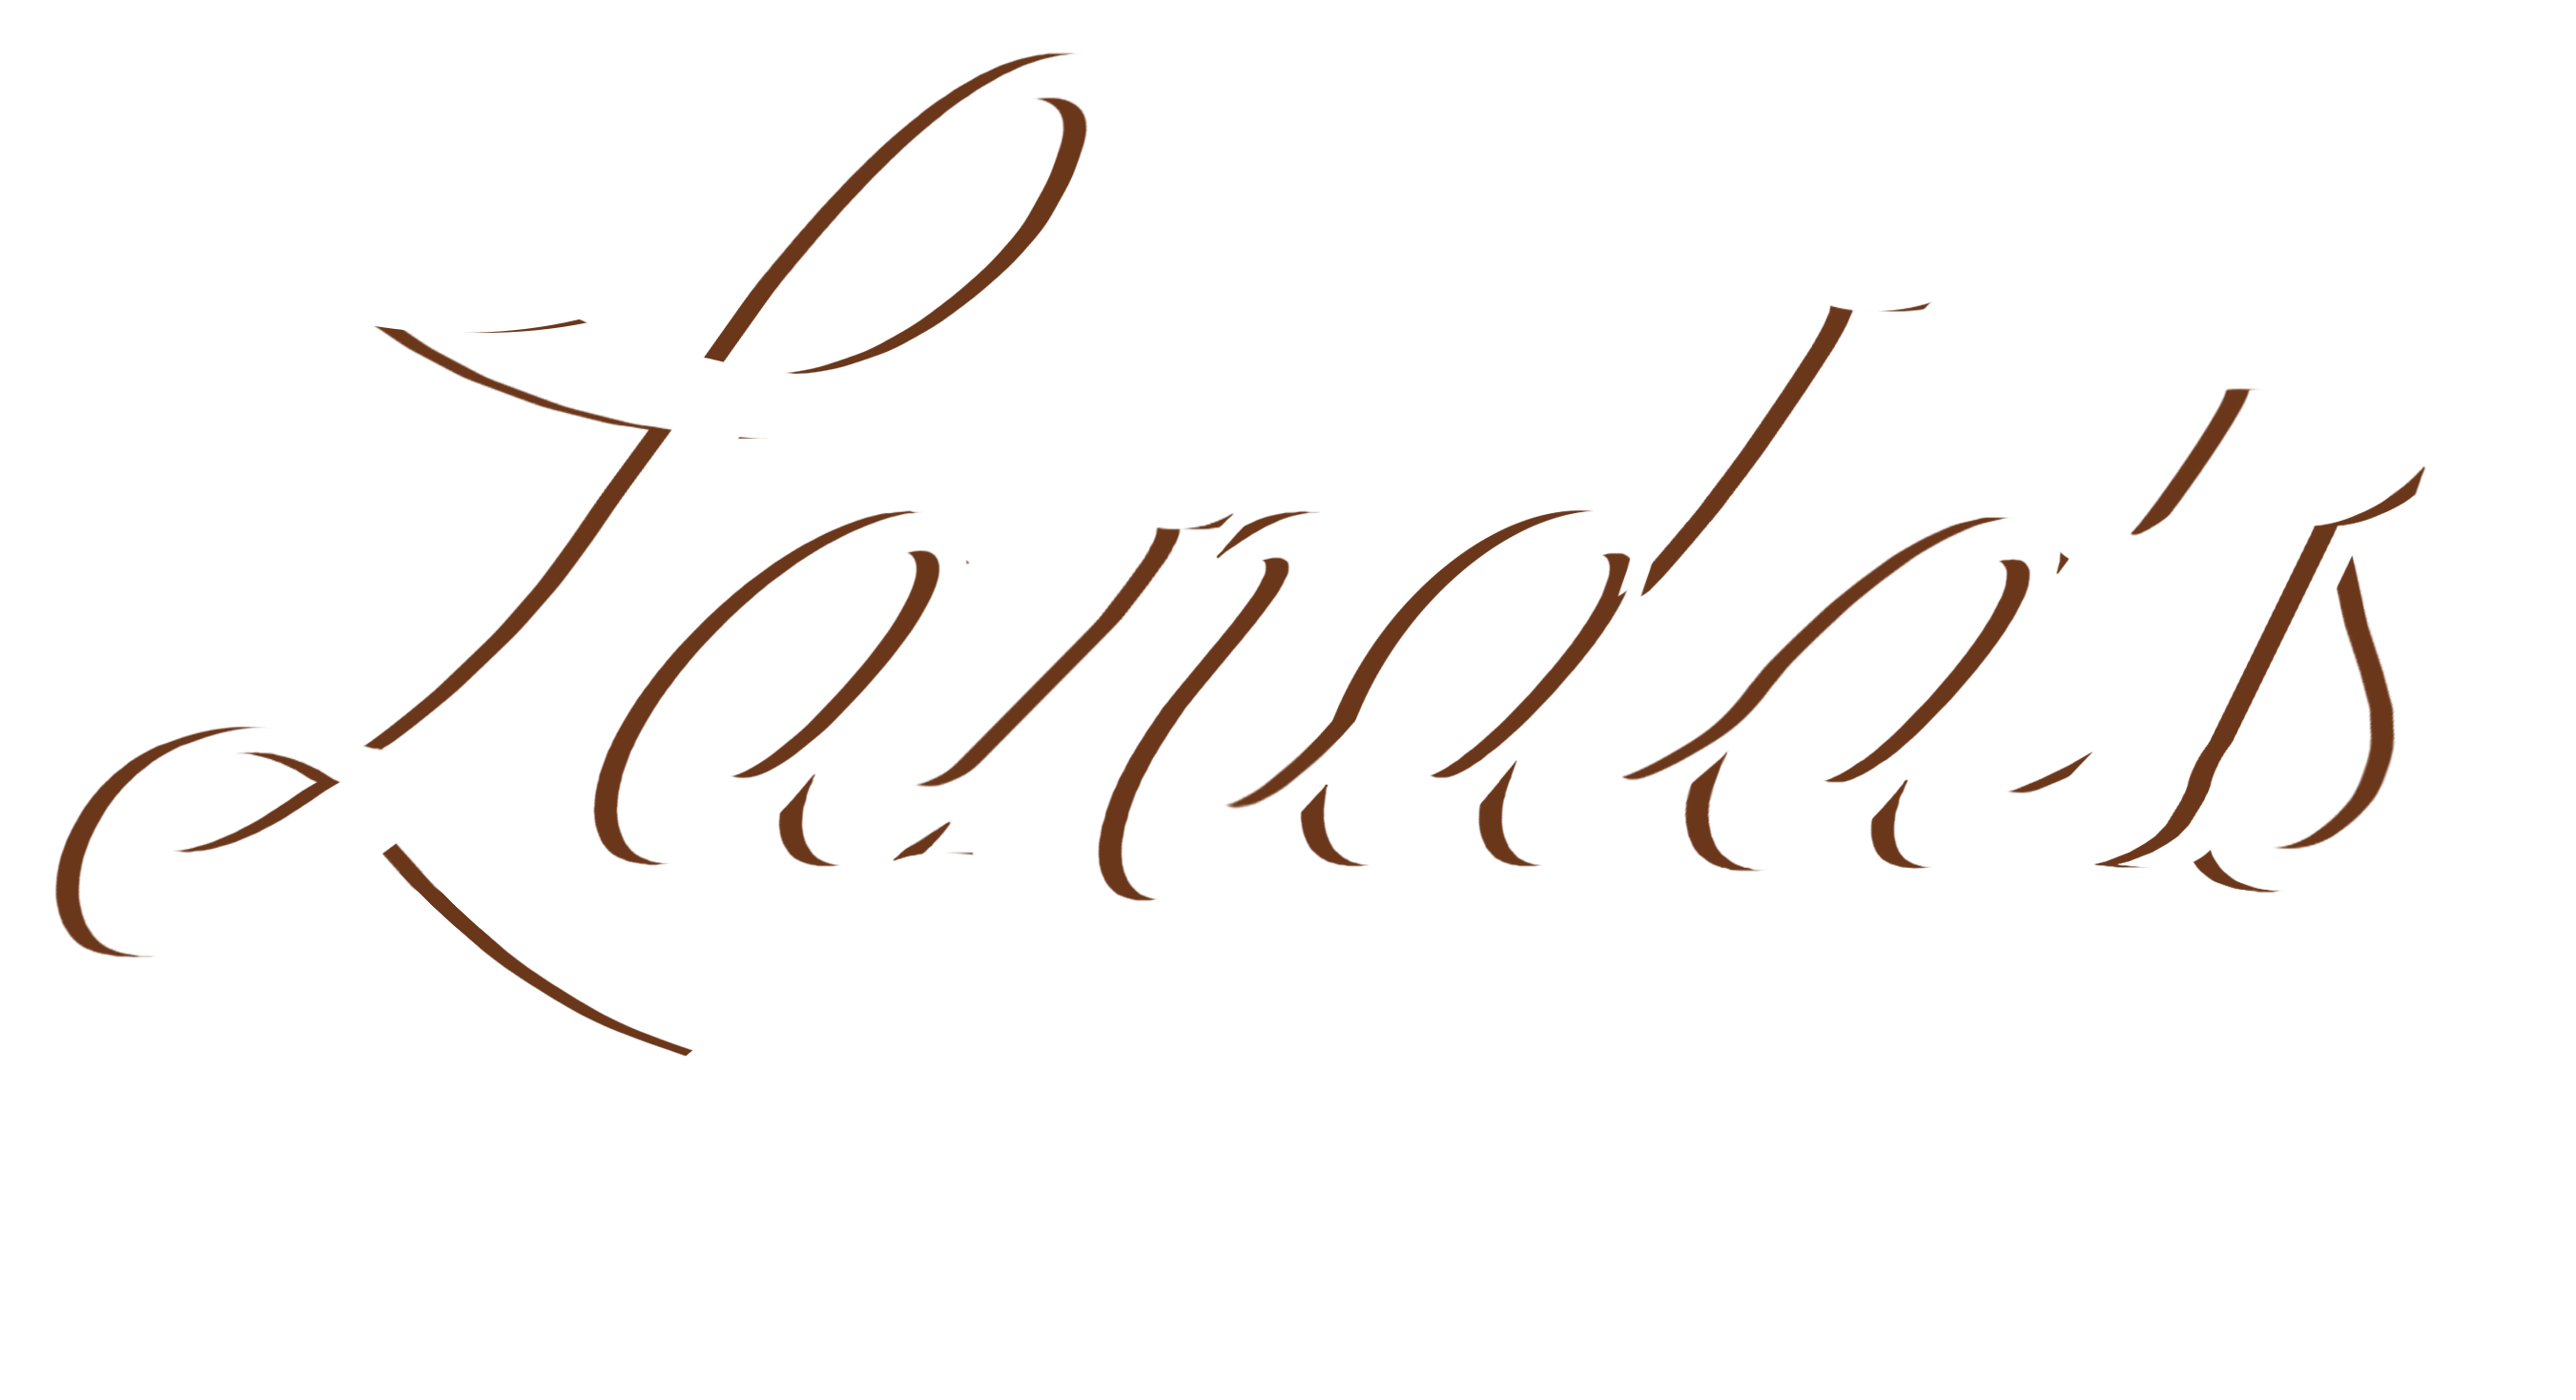 Landa‘s Distillerie